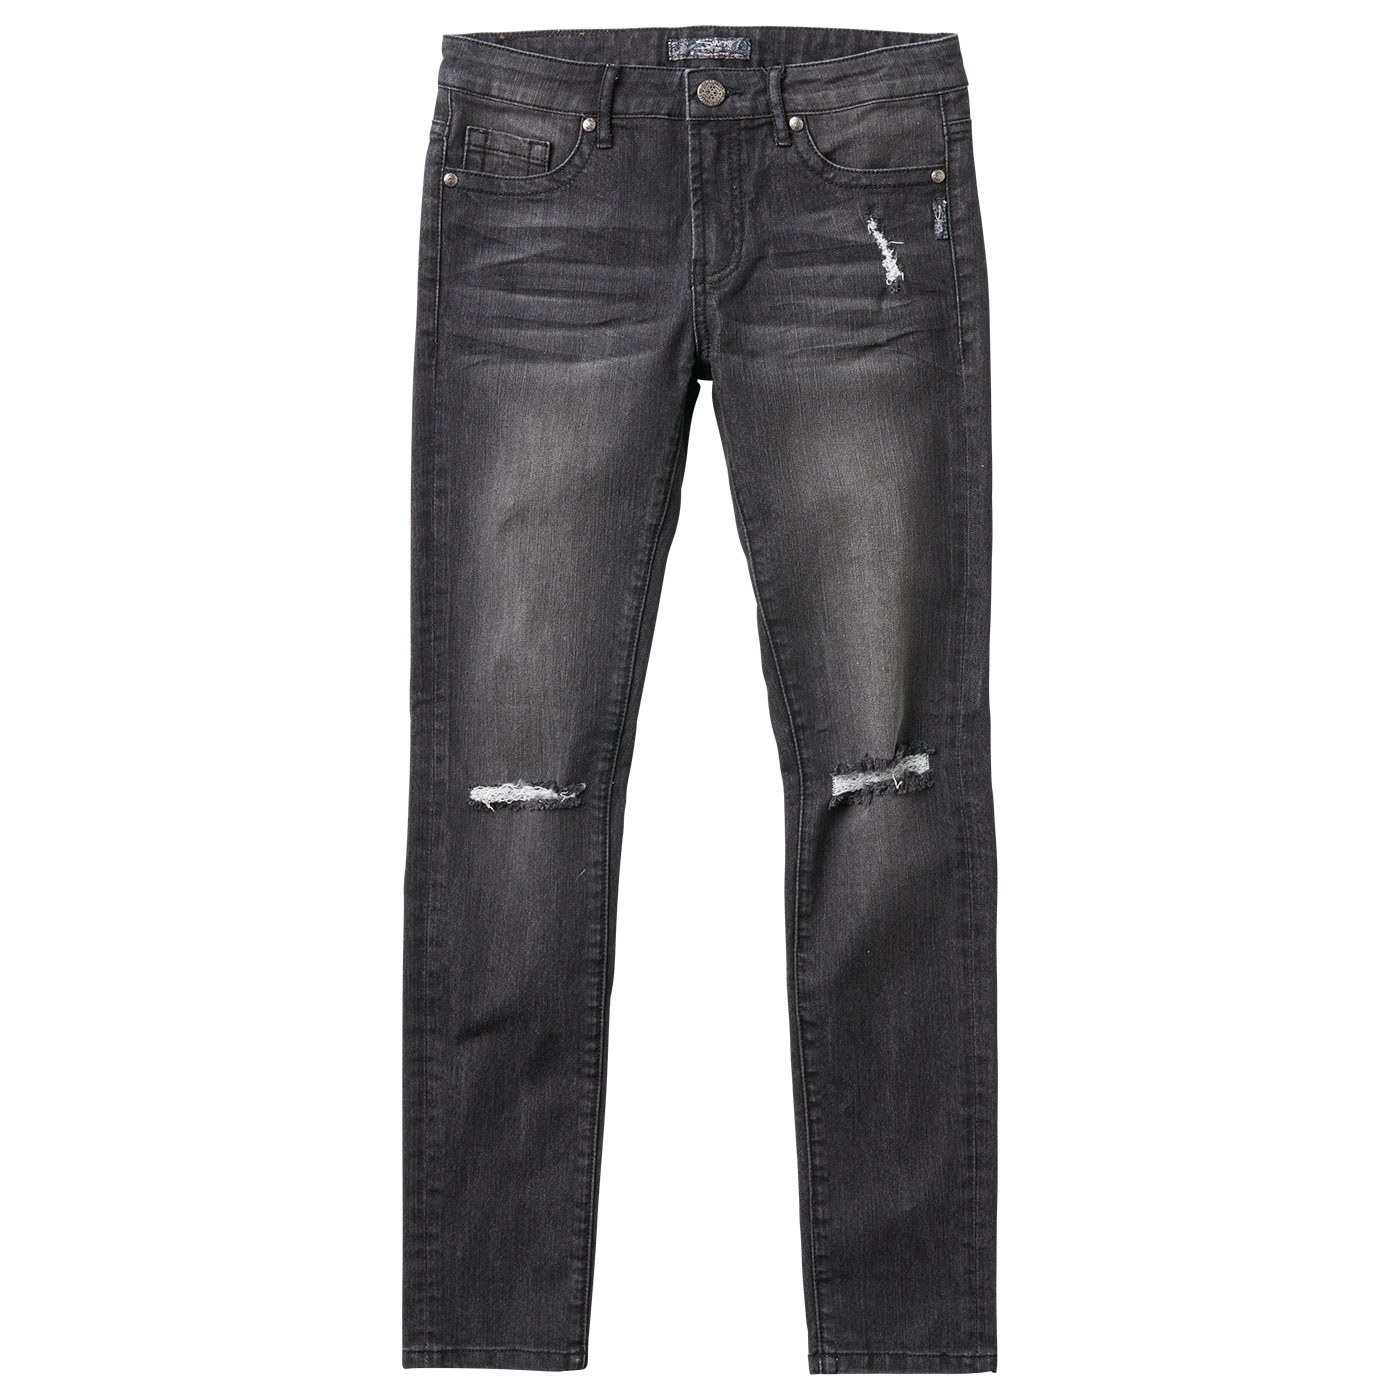 Jegging Fit Denim - Silver Jeans US